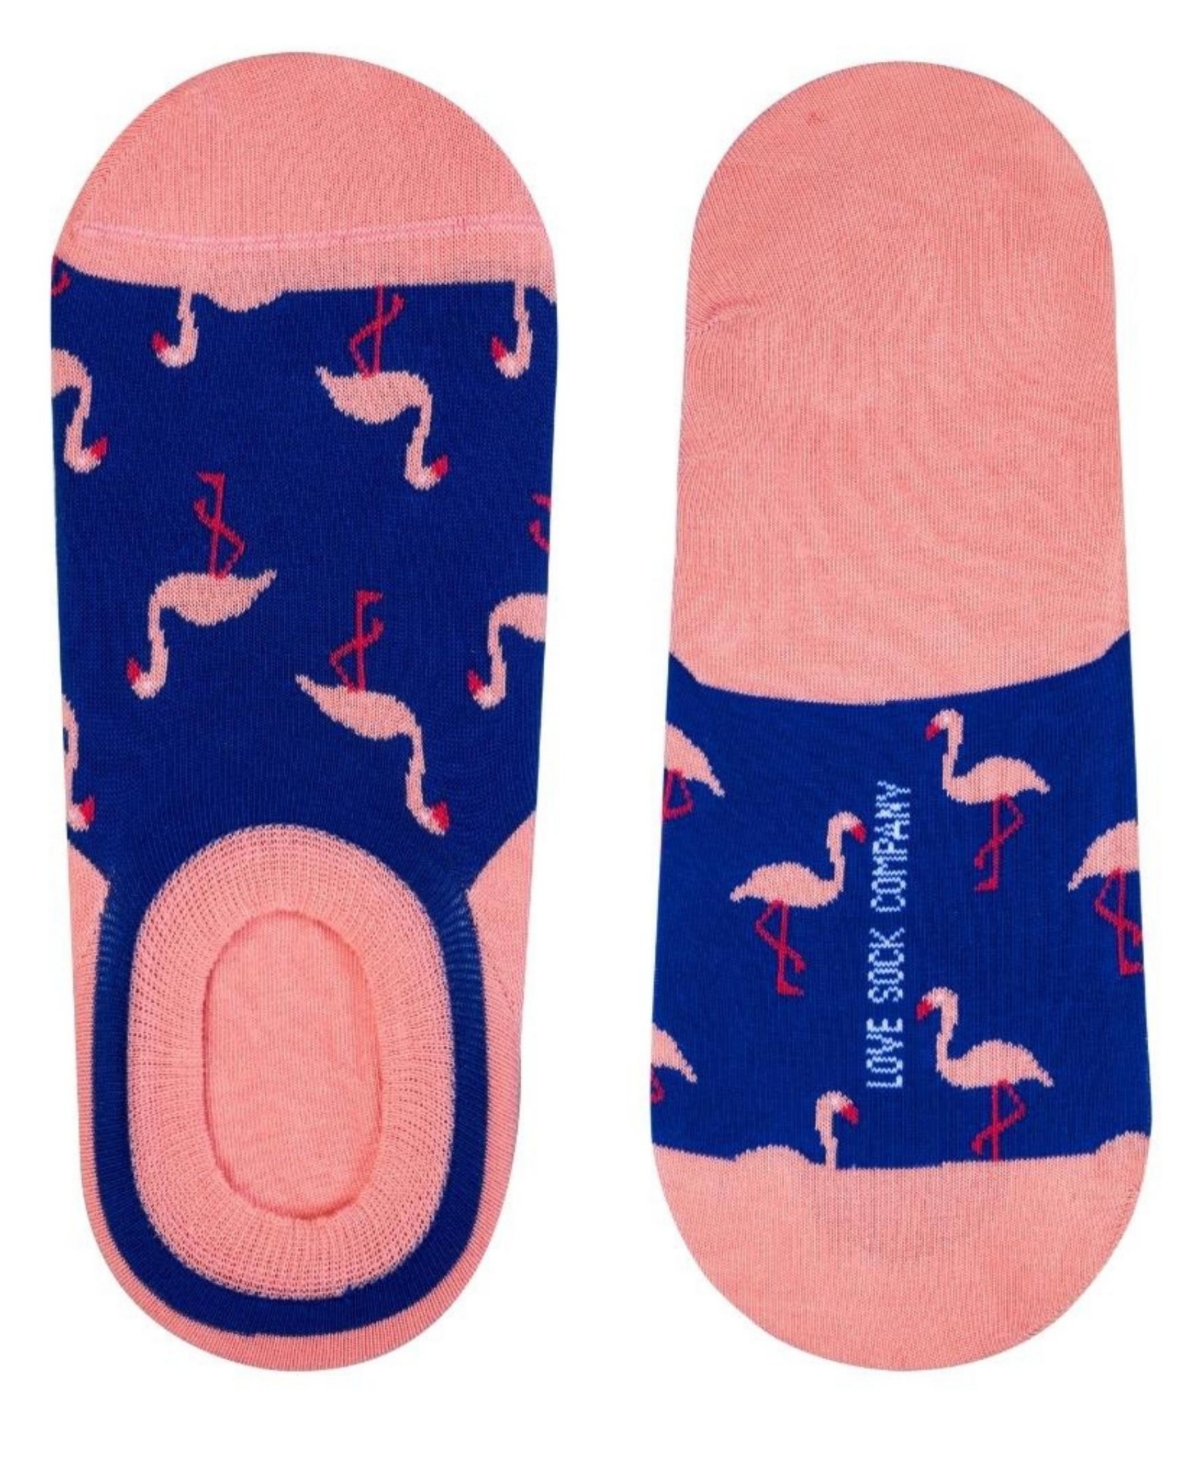 Love Sock Company Men's Flamingo Novelty No-Show Socks